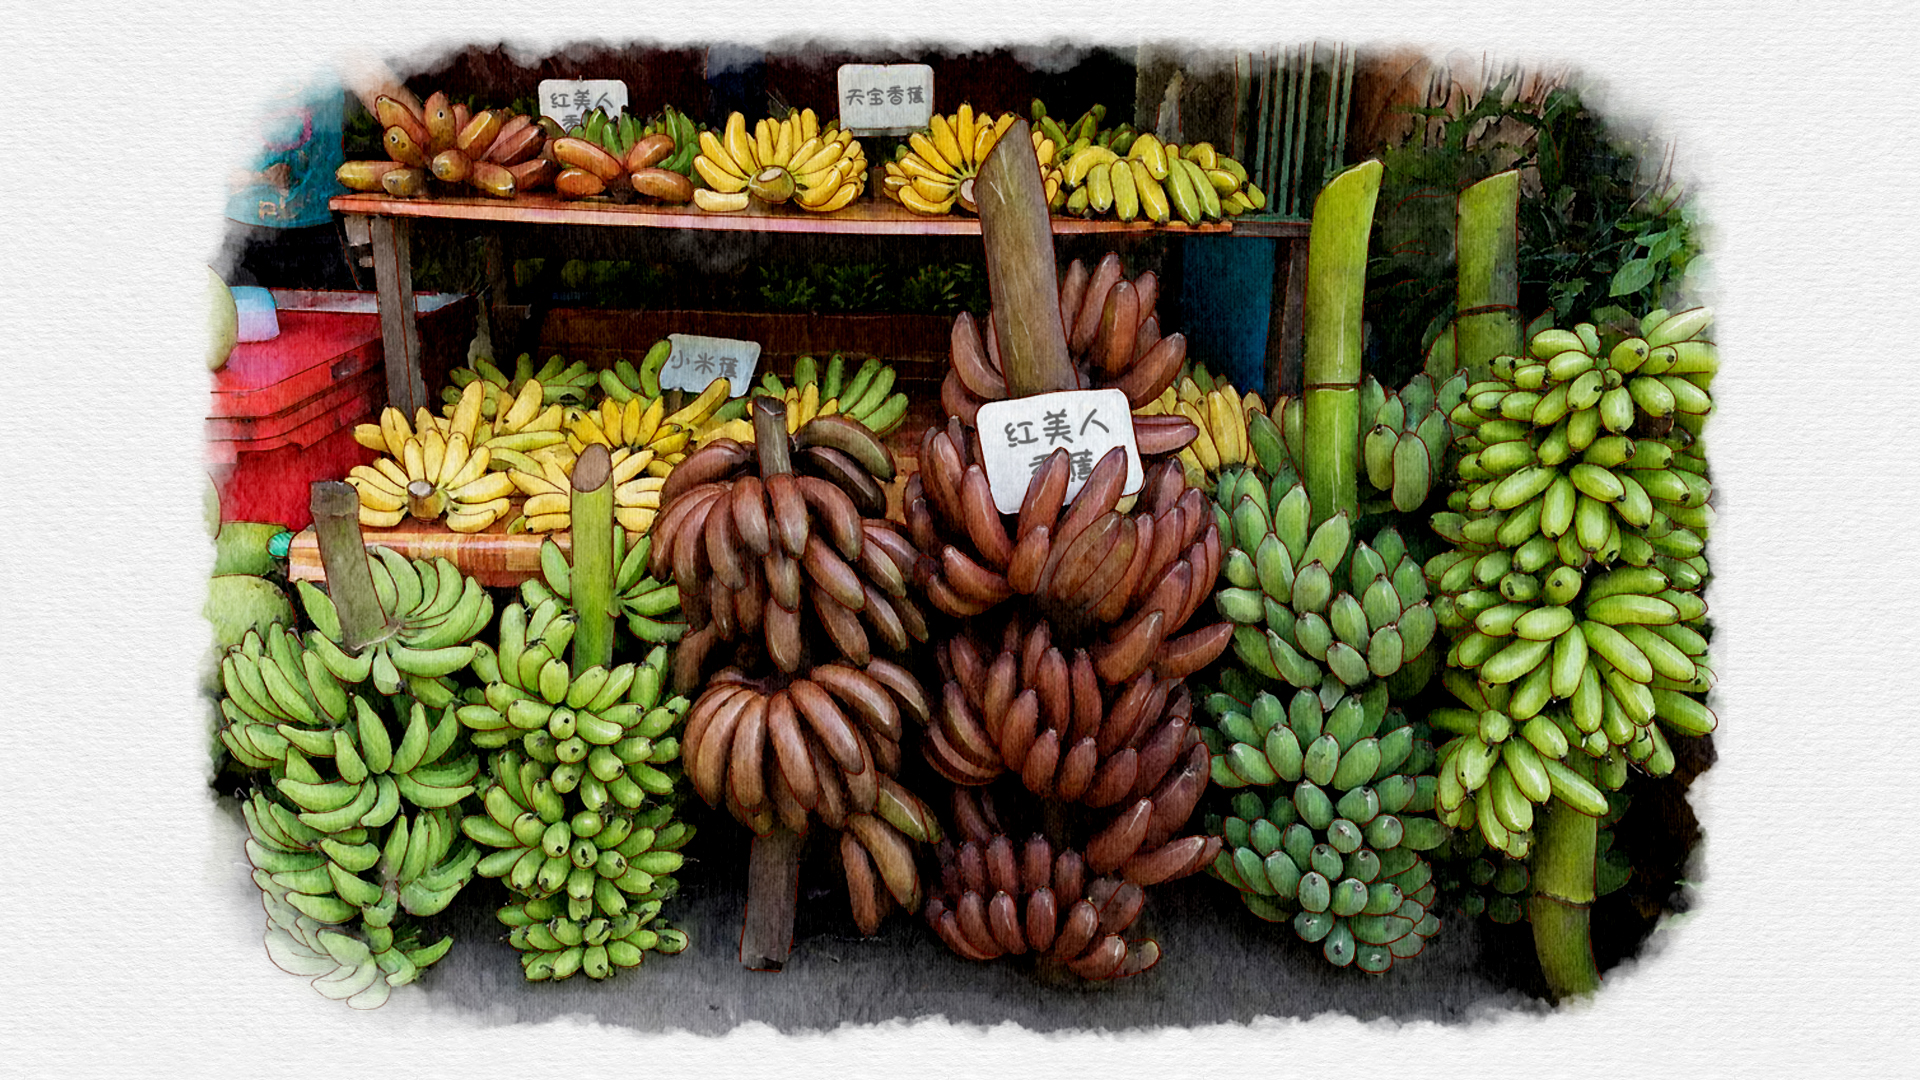 泰国米蕉新品亮相上海 | 国际果蔬报道